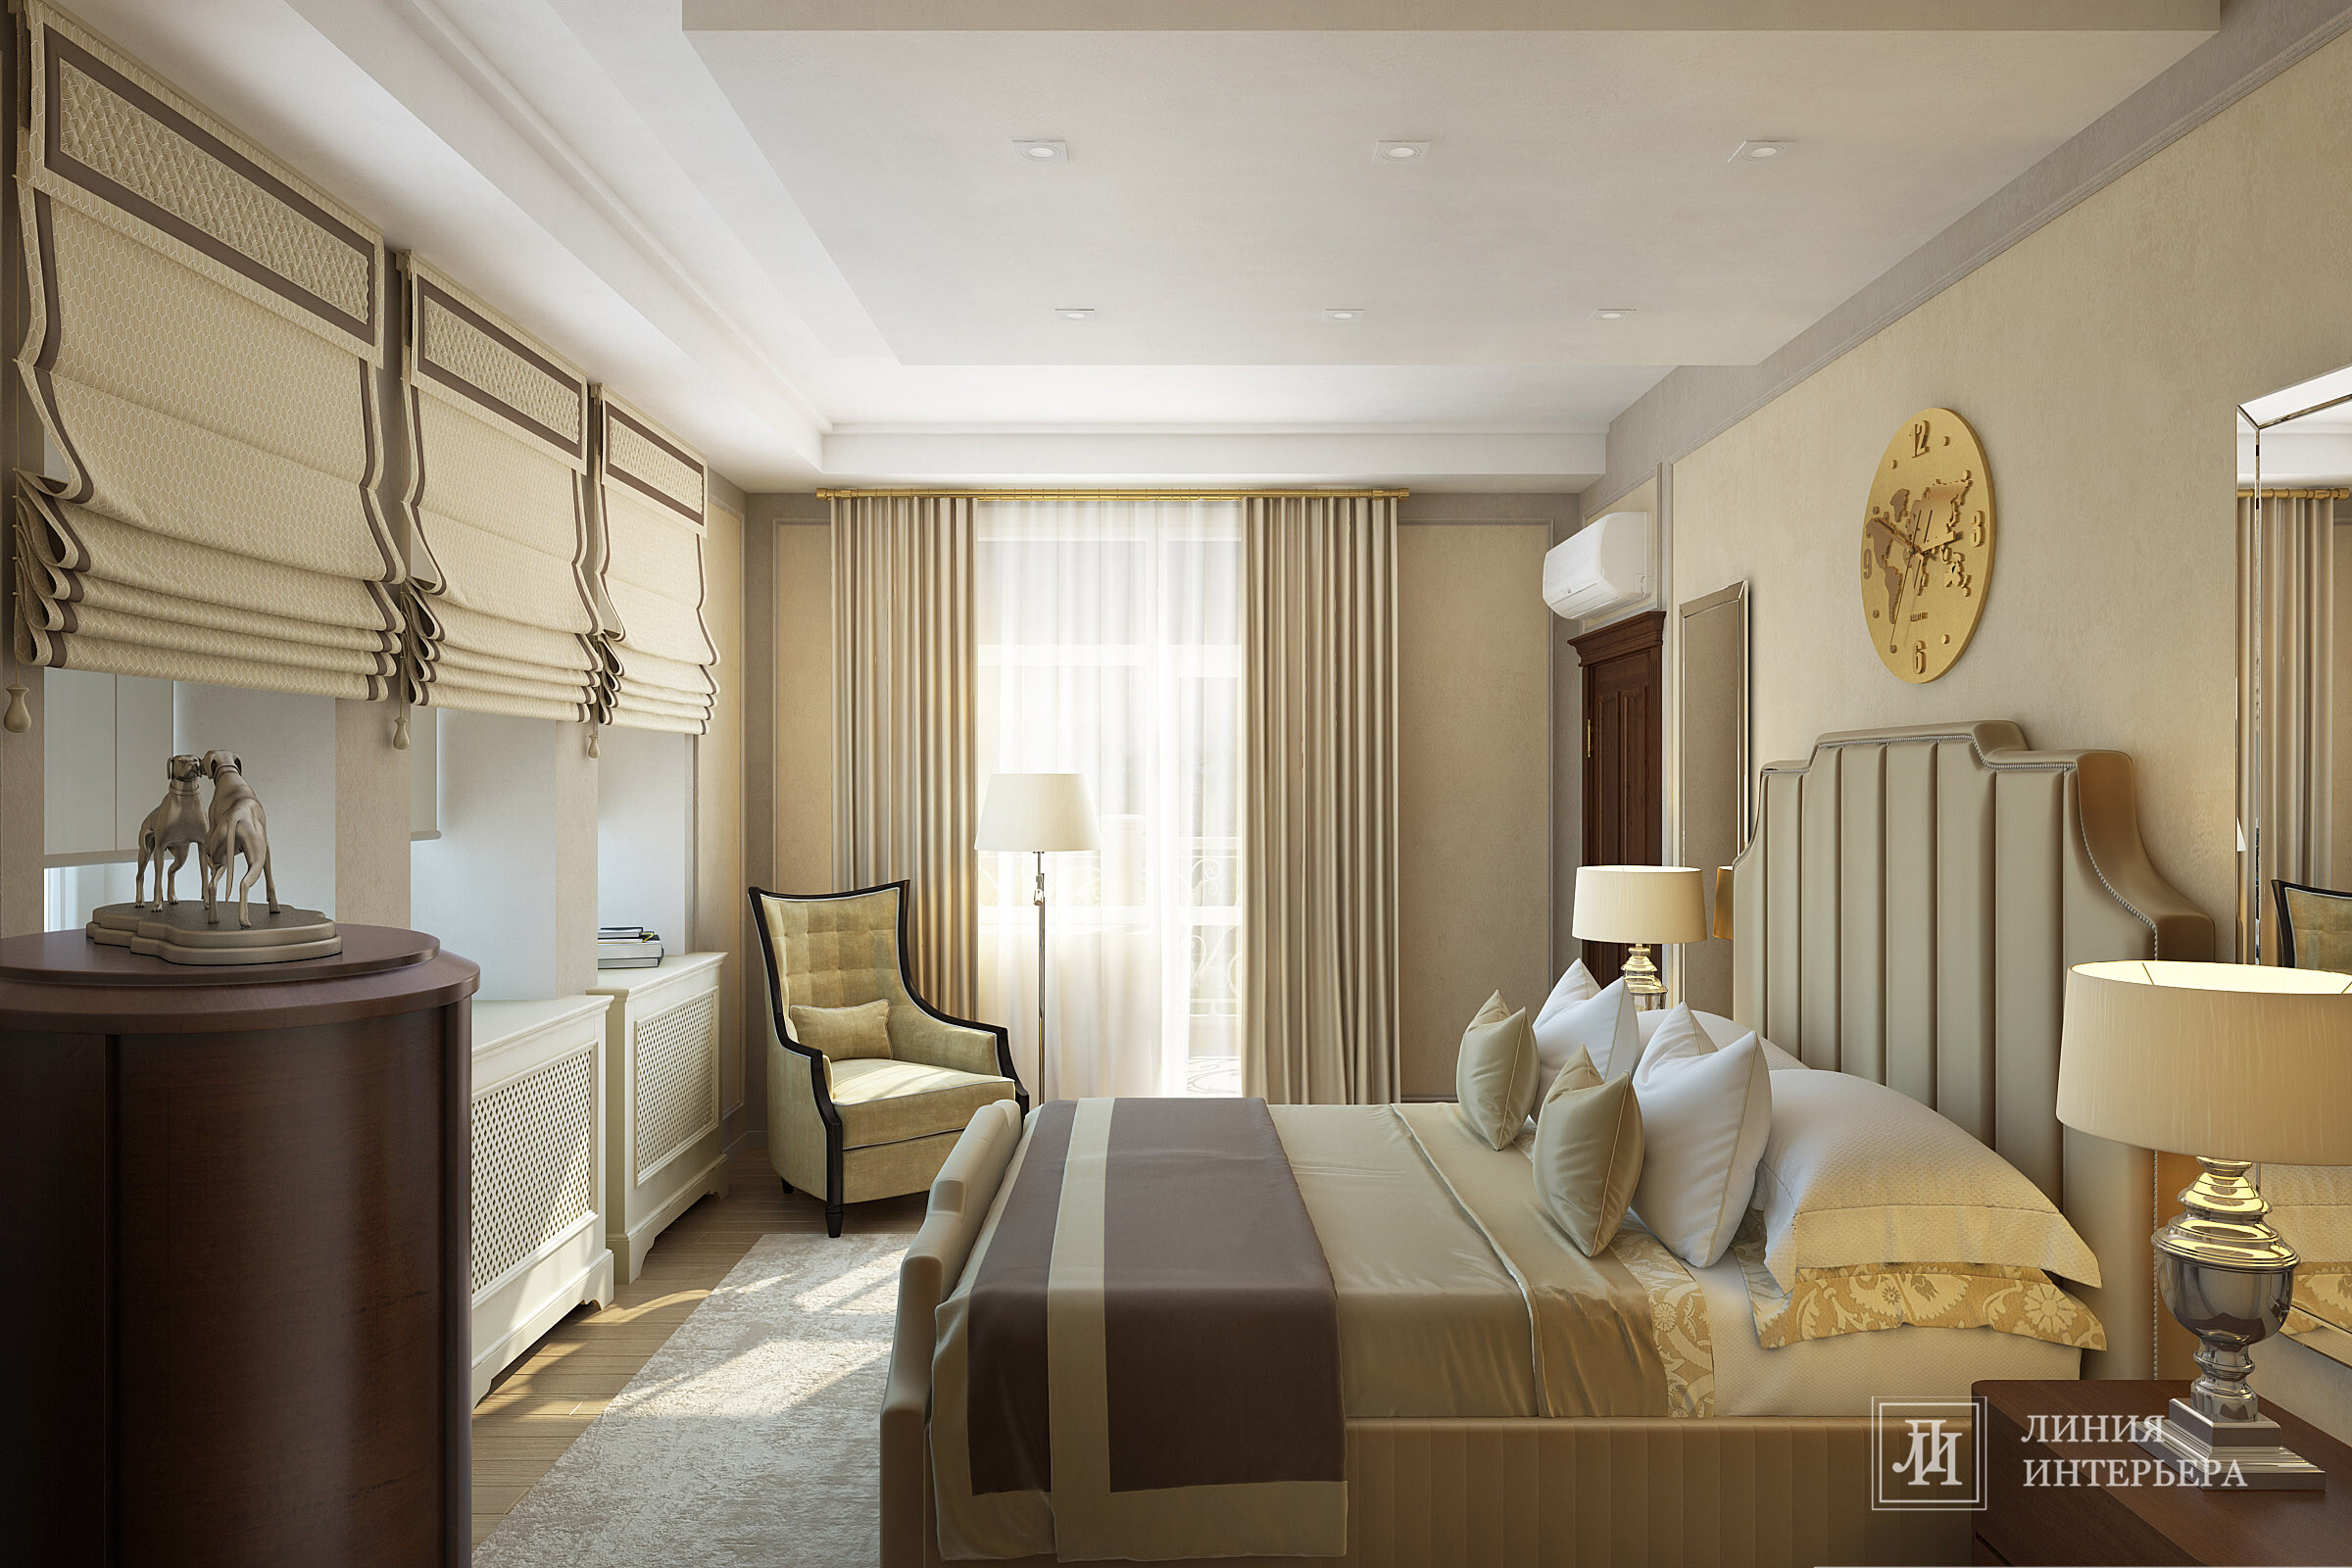 Интерьер спальни cветильниками над кроватью в неоклассике, в классическом стиле и в восточном стиле